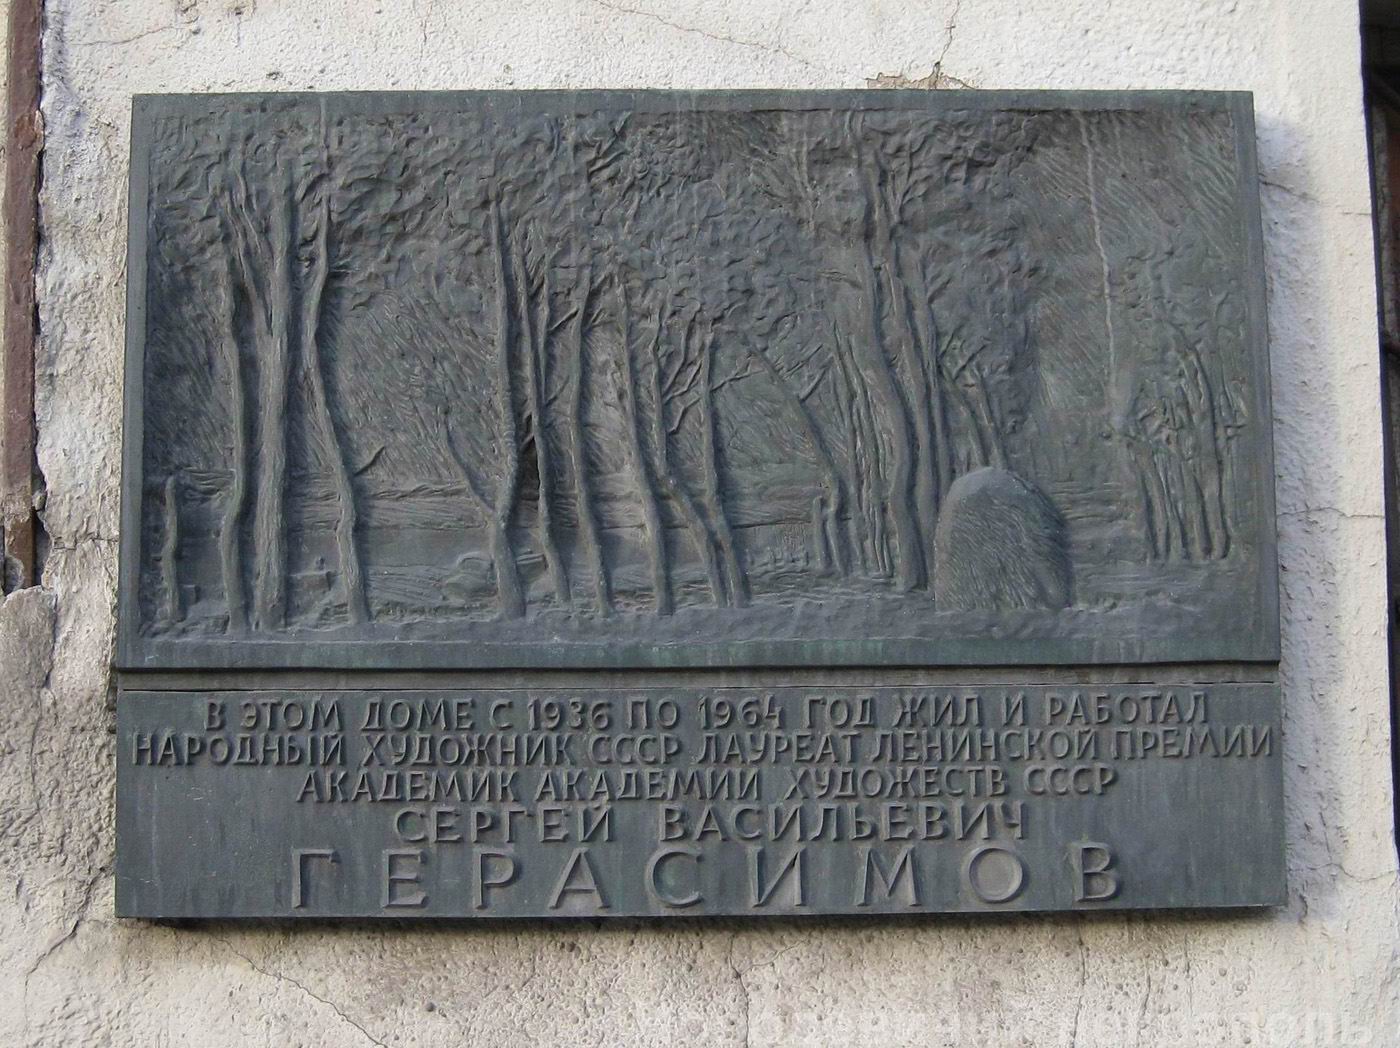 Мемориальная доска Герасимову С.В. (1871–1960), ск. И.П.Казанский, на Петровско-Разумовской аллее, дом 2, открыта 17.12.1985.